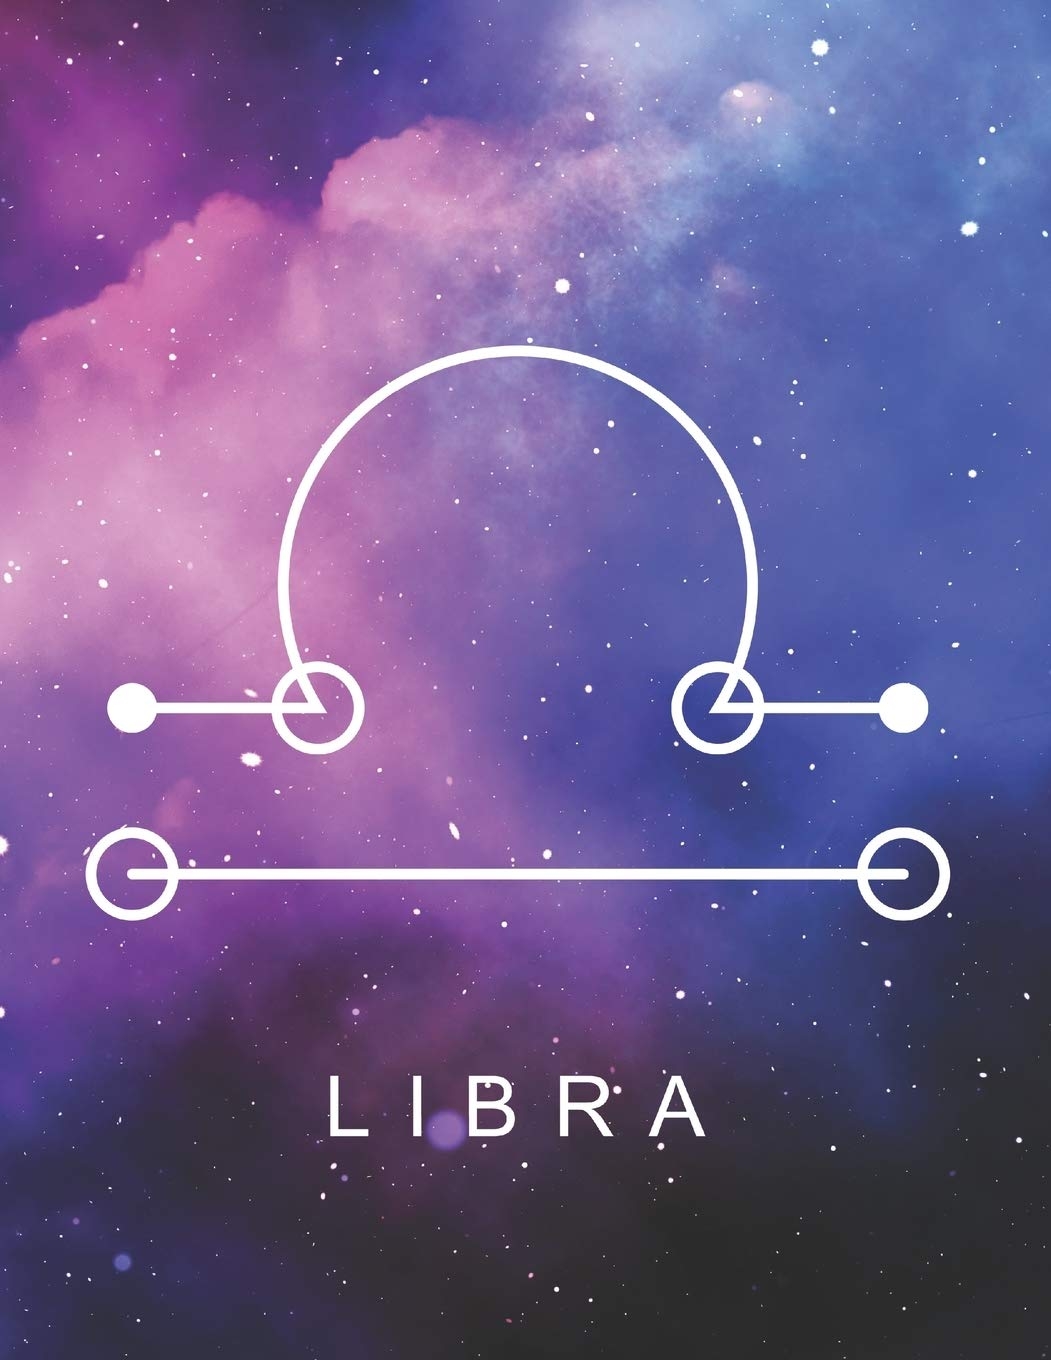 Libra. Photo: Amazon